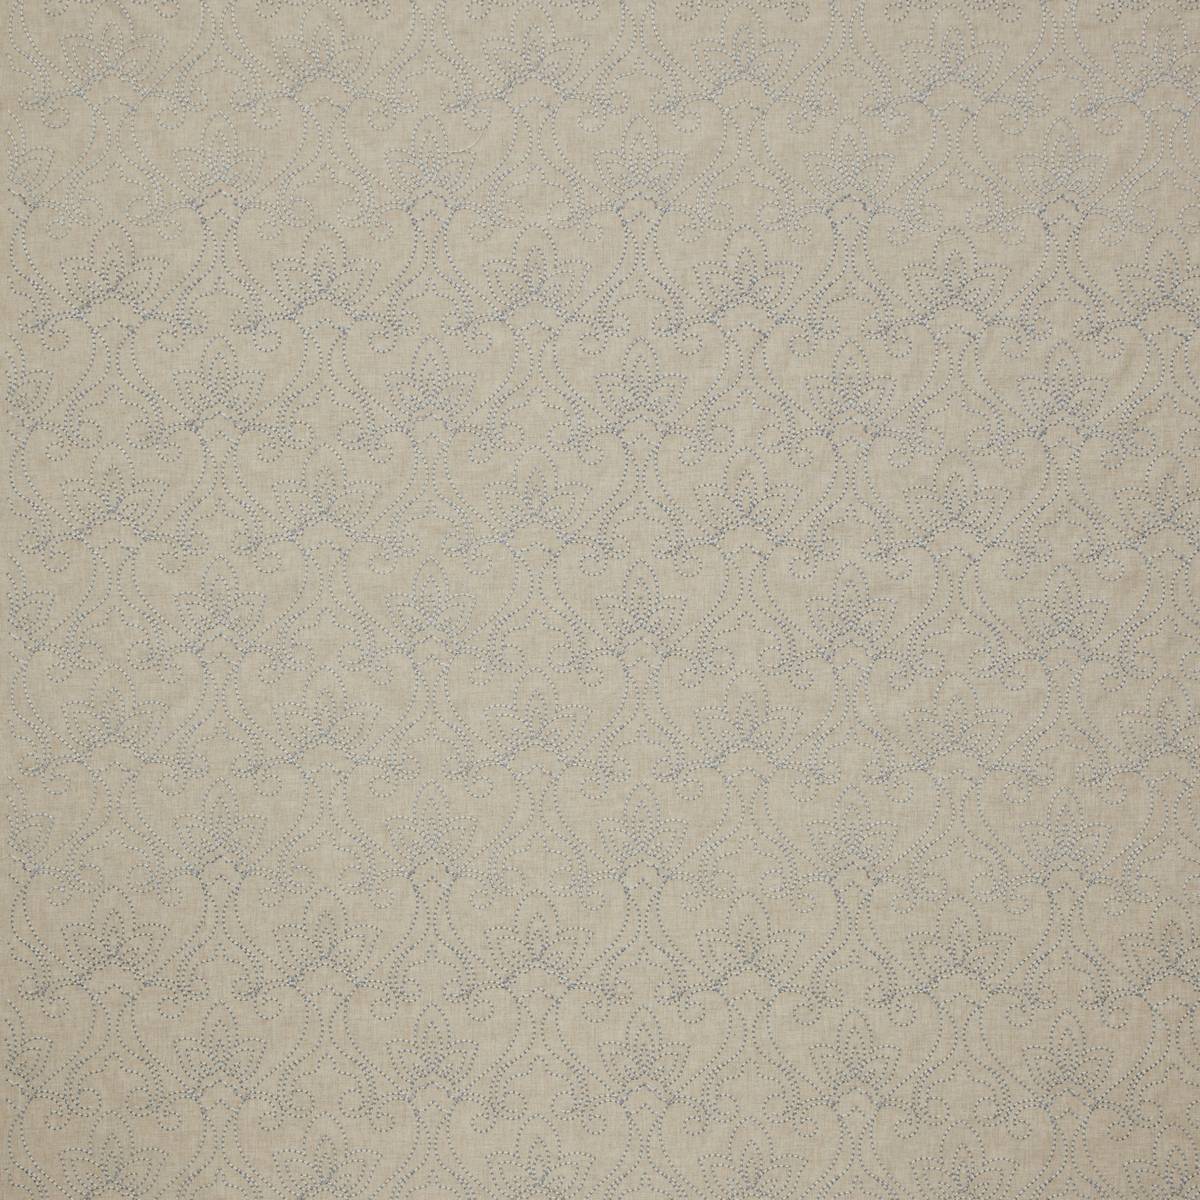 Rhythm Linen Fabric by iLiv